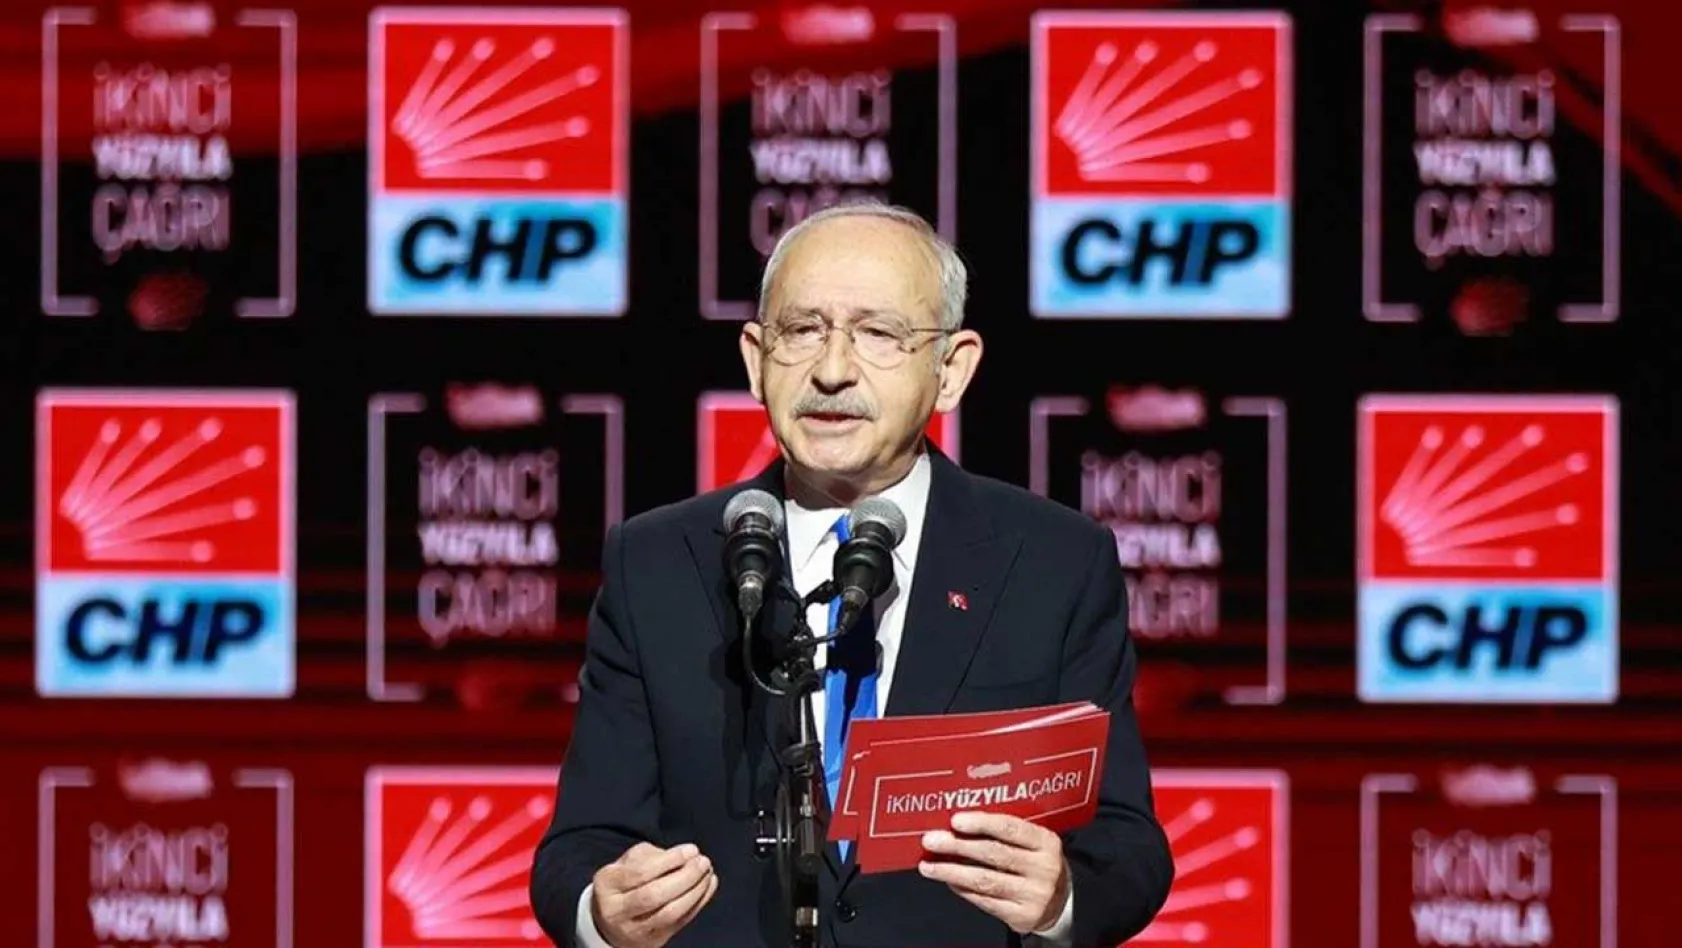 Kılıçdaroğlu, CHP'nin ikinci yüzyıl vizyonunu açıkladı